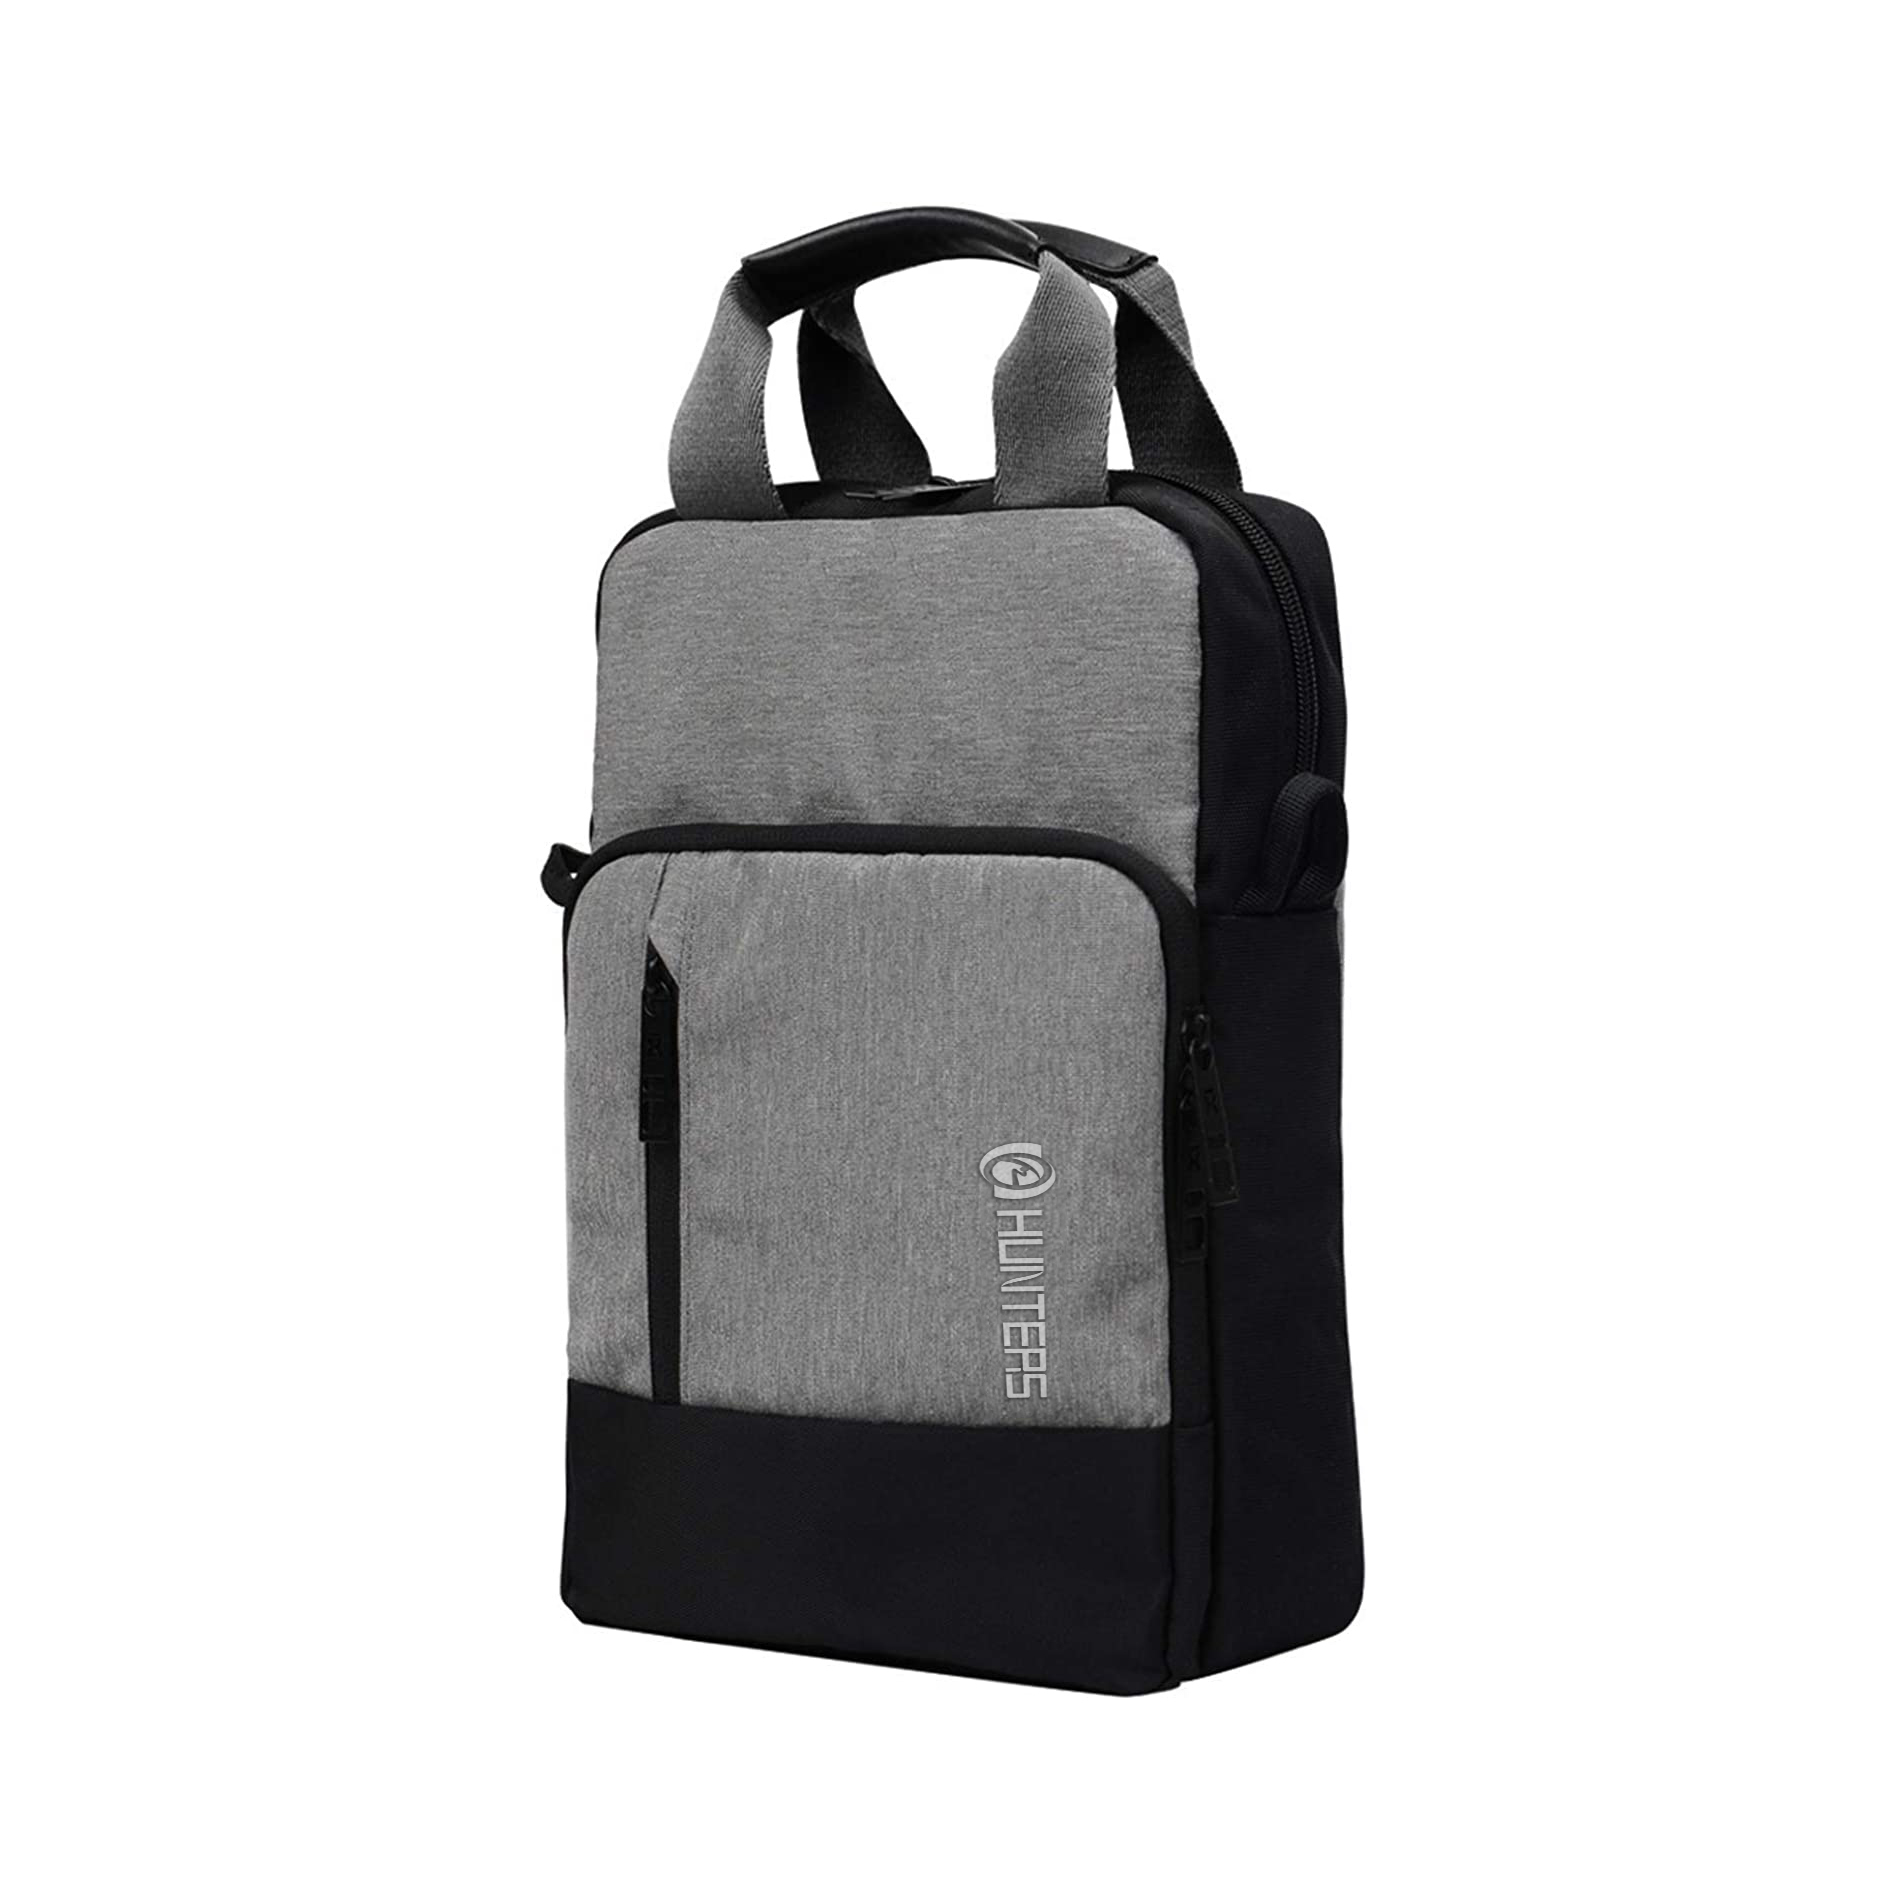 Bhegi repamapfudzi revakadzi Diki Tablet Bag Rakasimba Satchel Style Purse Outdoor Messenger Bag Sling Bag revarume